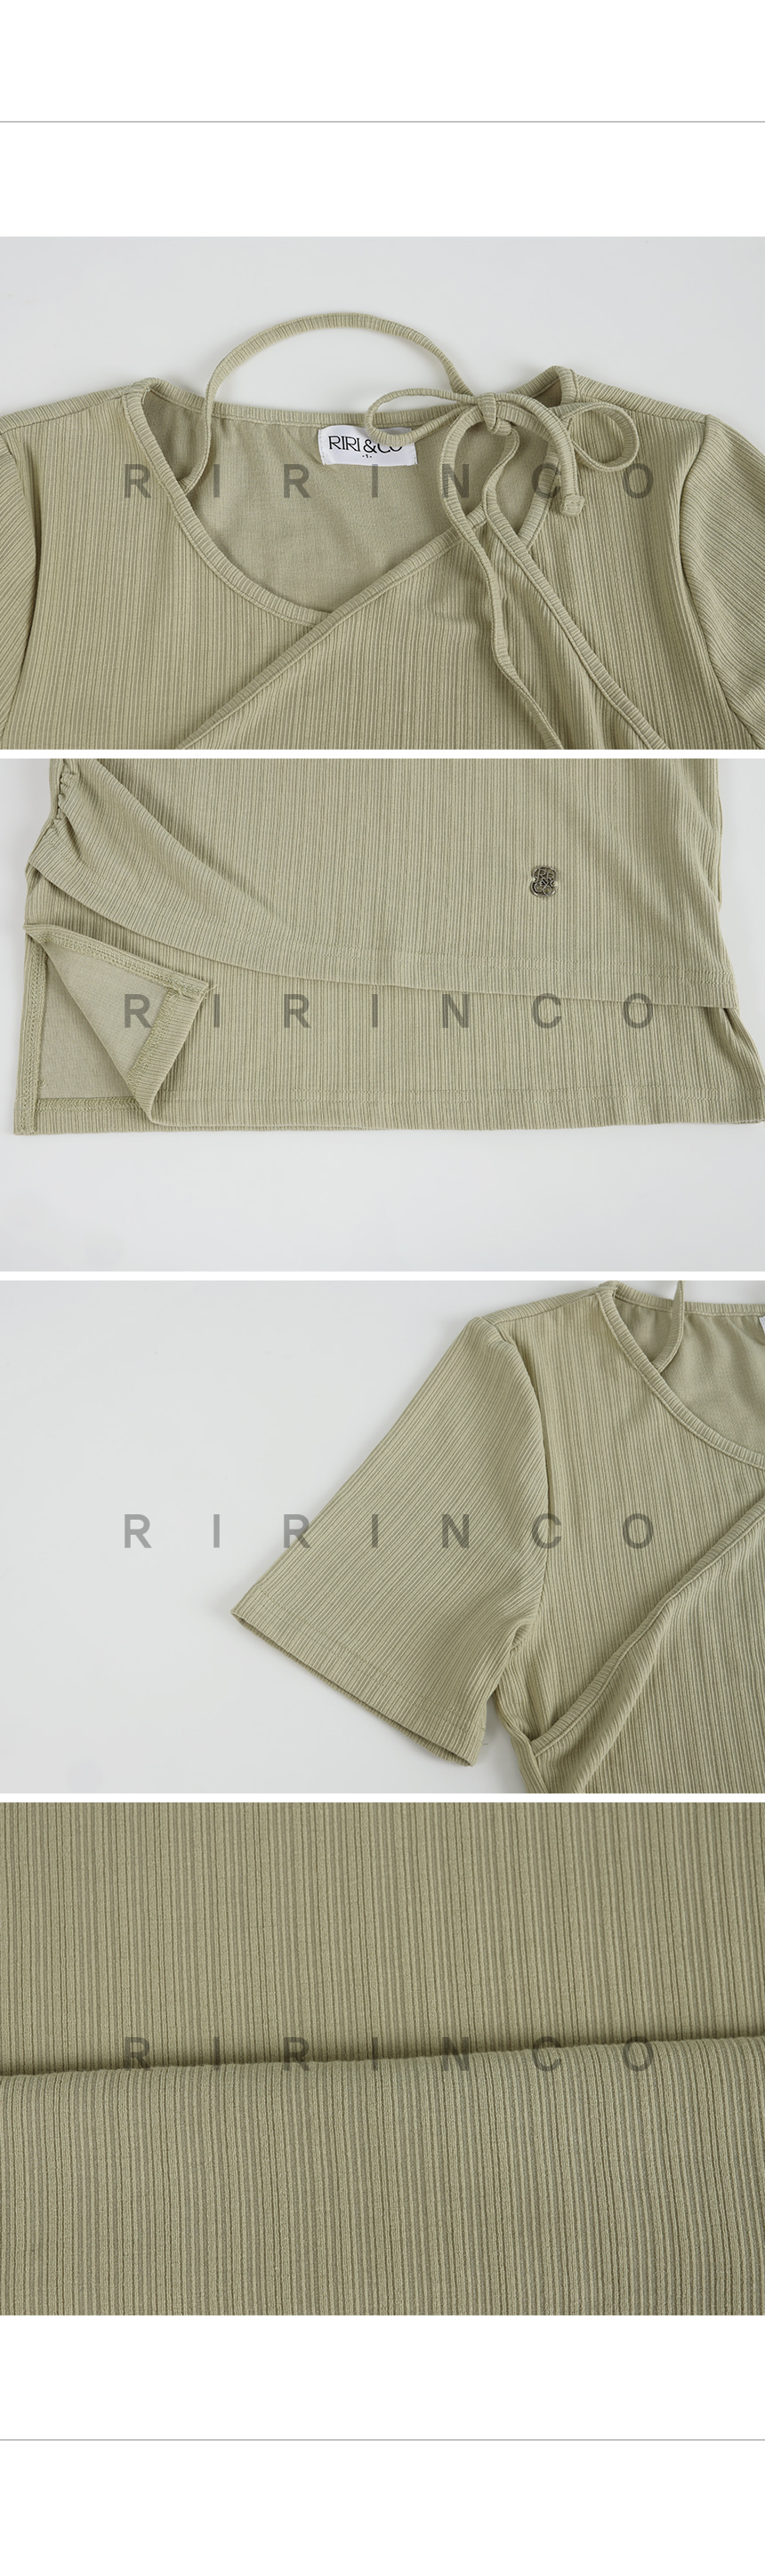 RIRINCO リブビスチェペンダントTシャツ